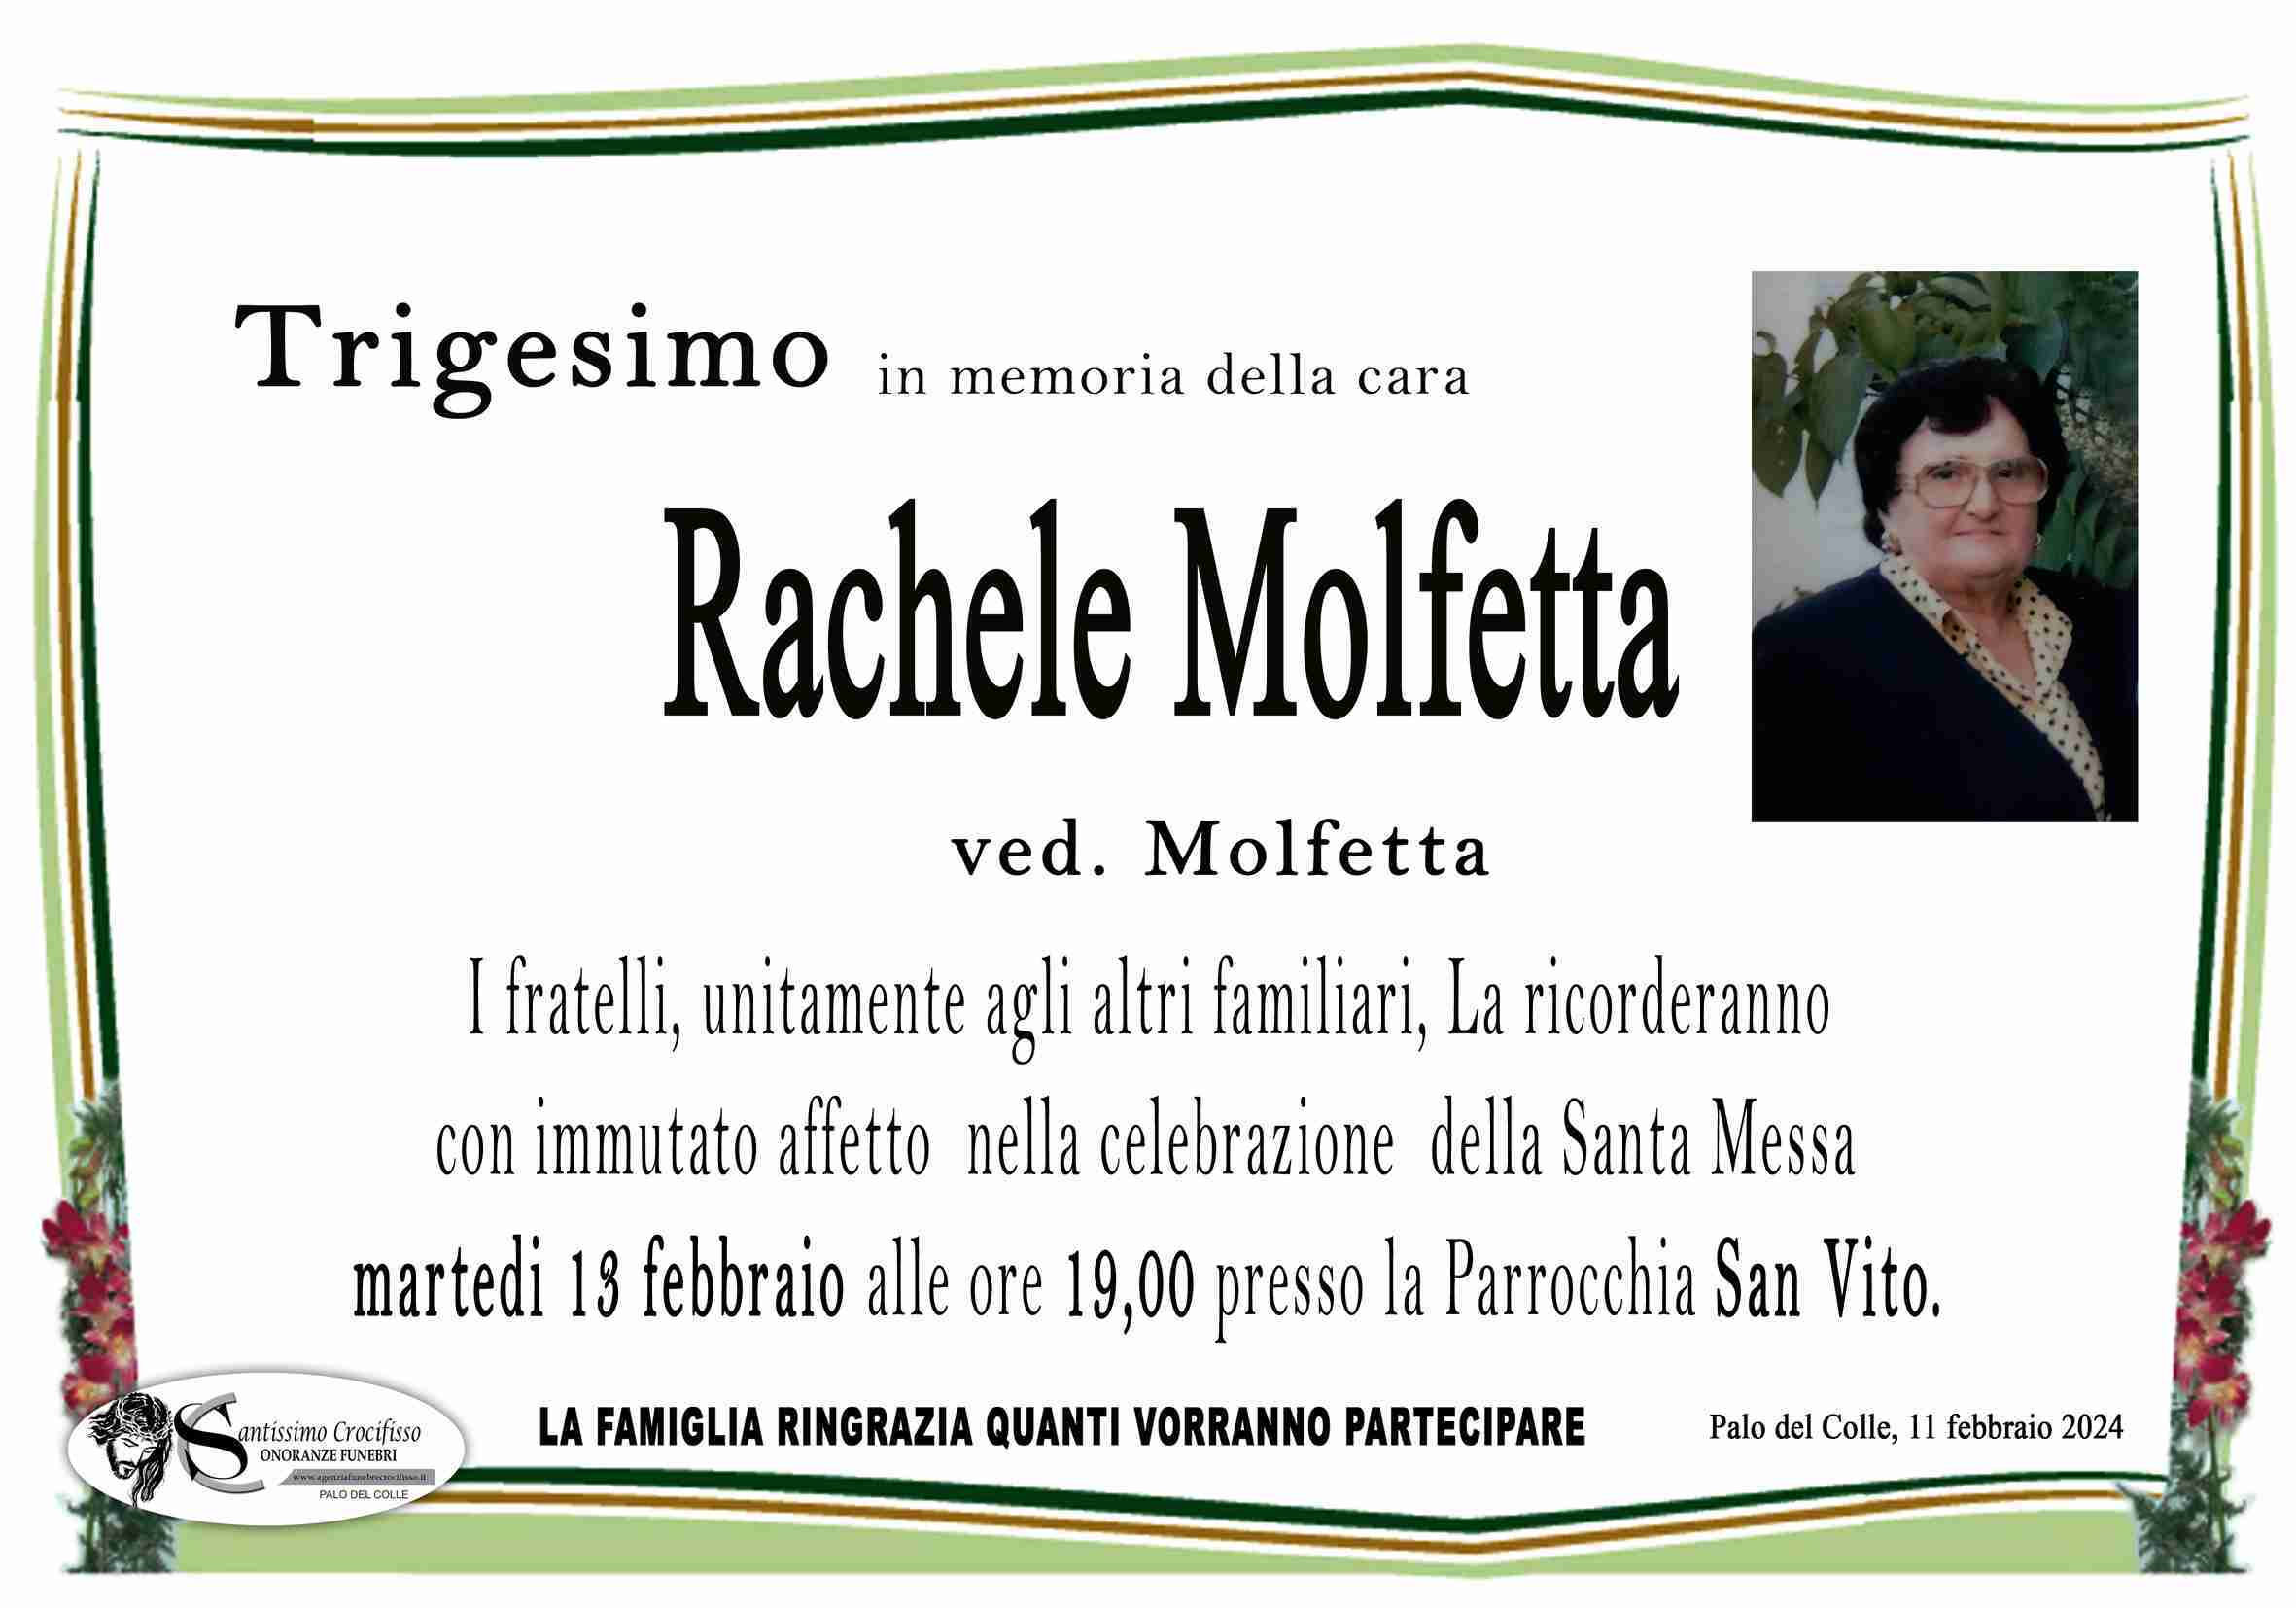 Rachele Molfetta